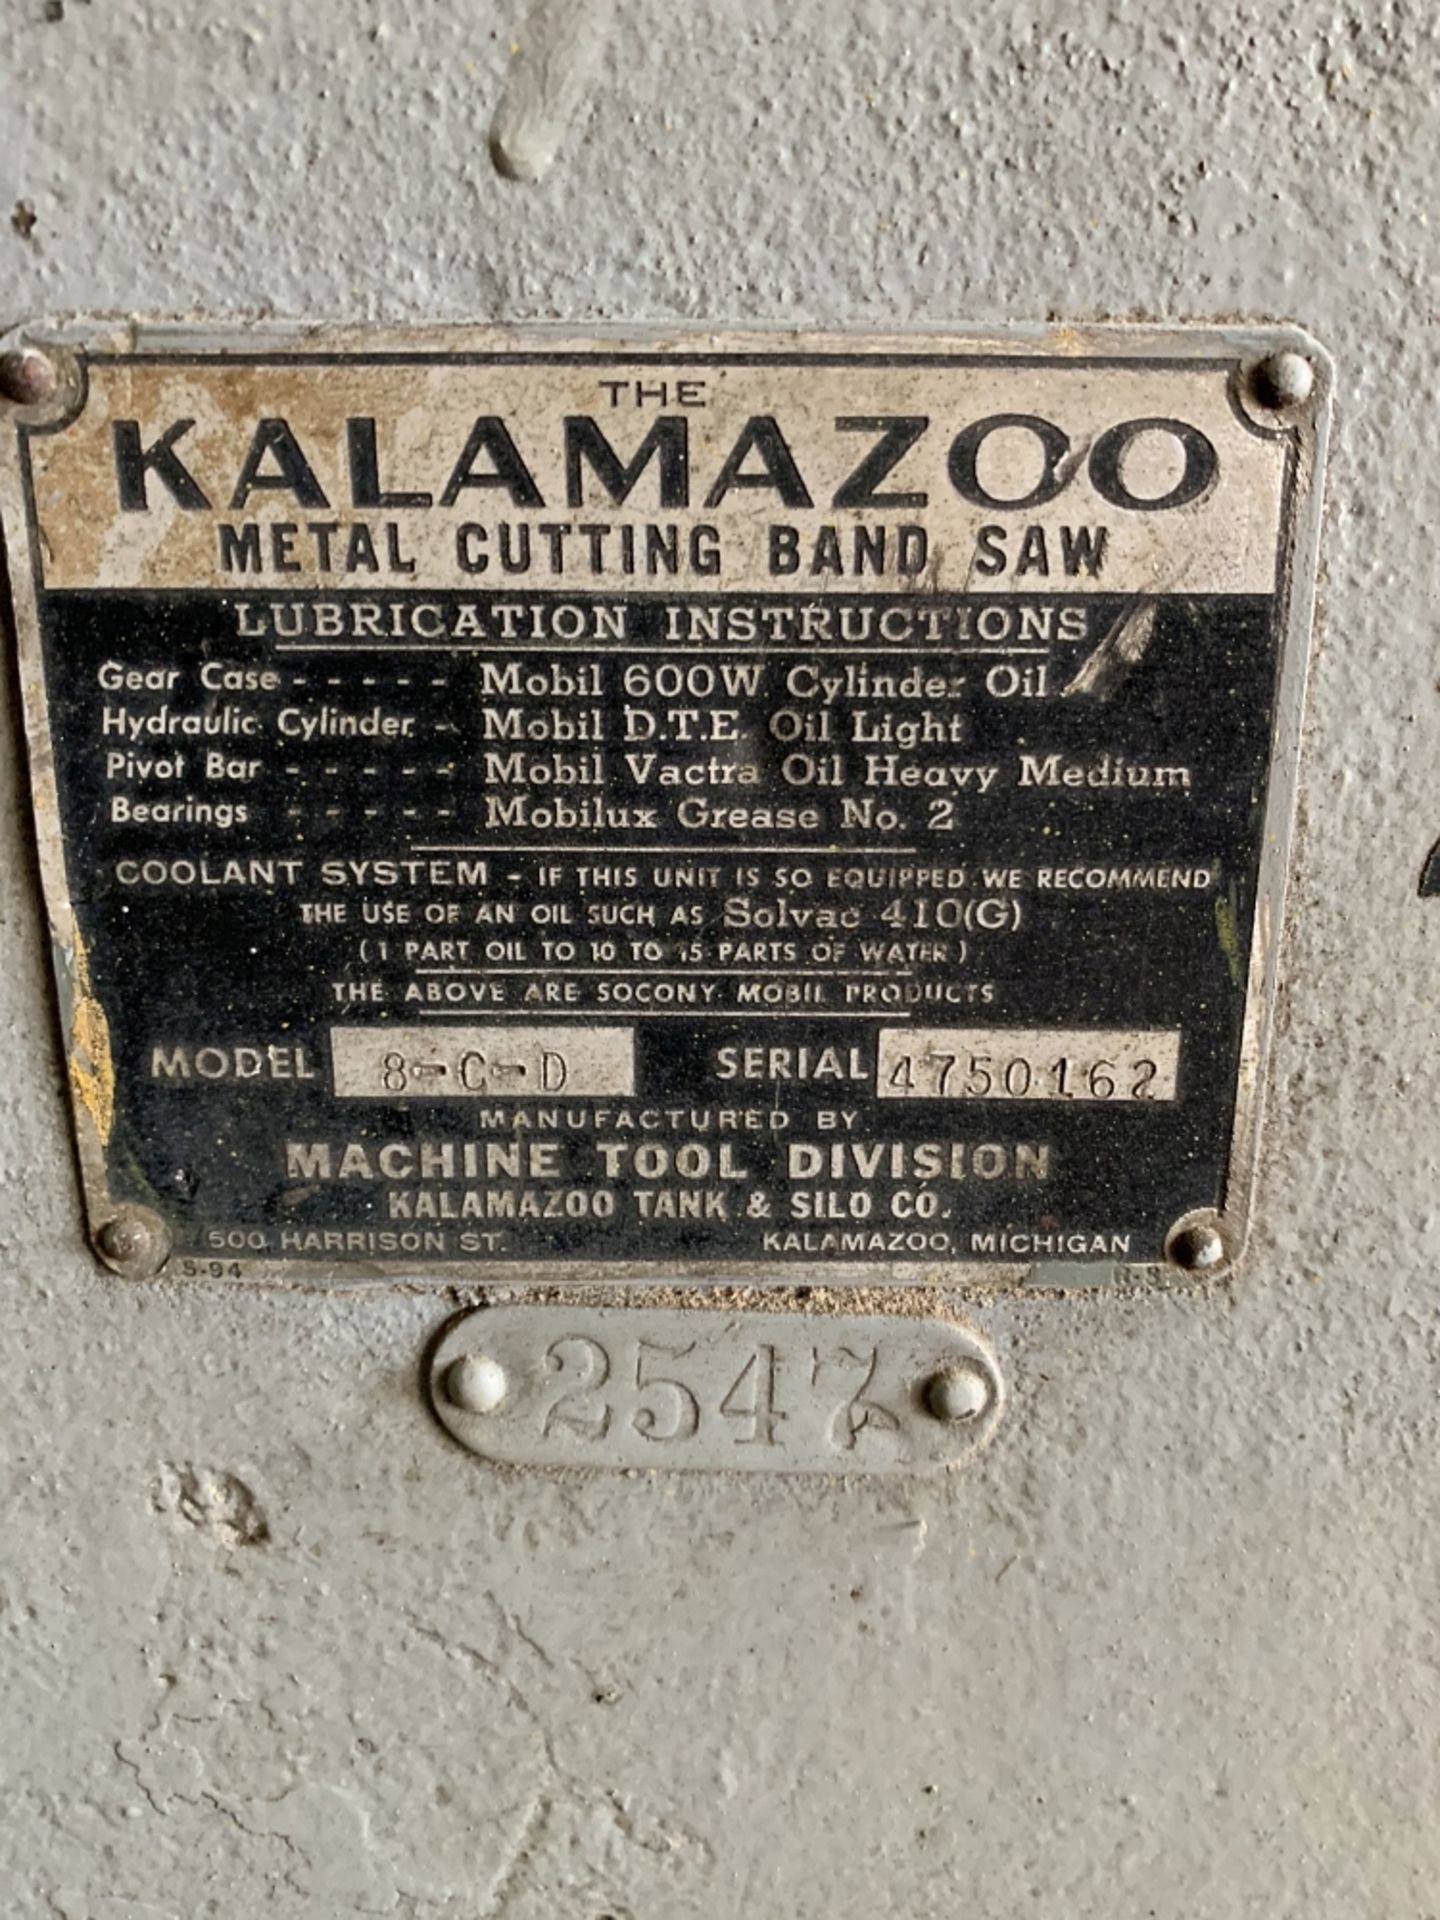 Kalamozoo Bandsaw, Mdl 8-CD, SN 4750162 - Image 3 of 3